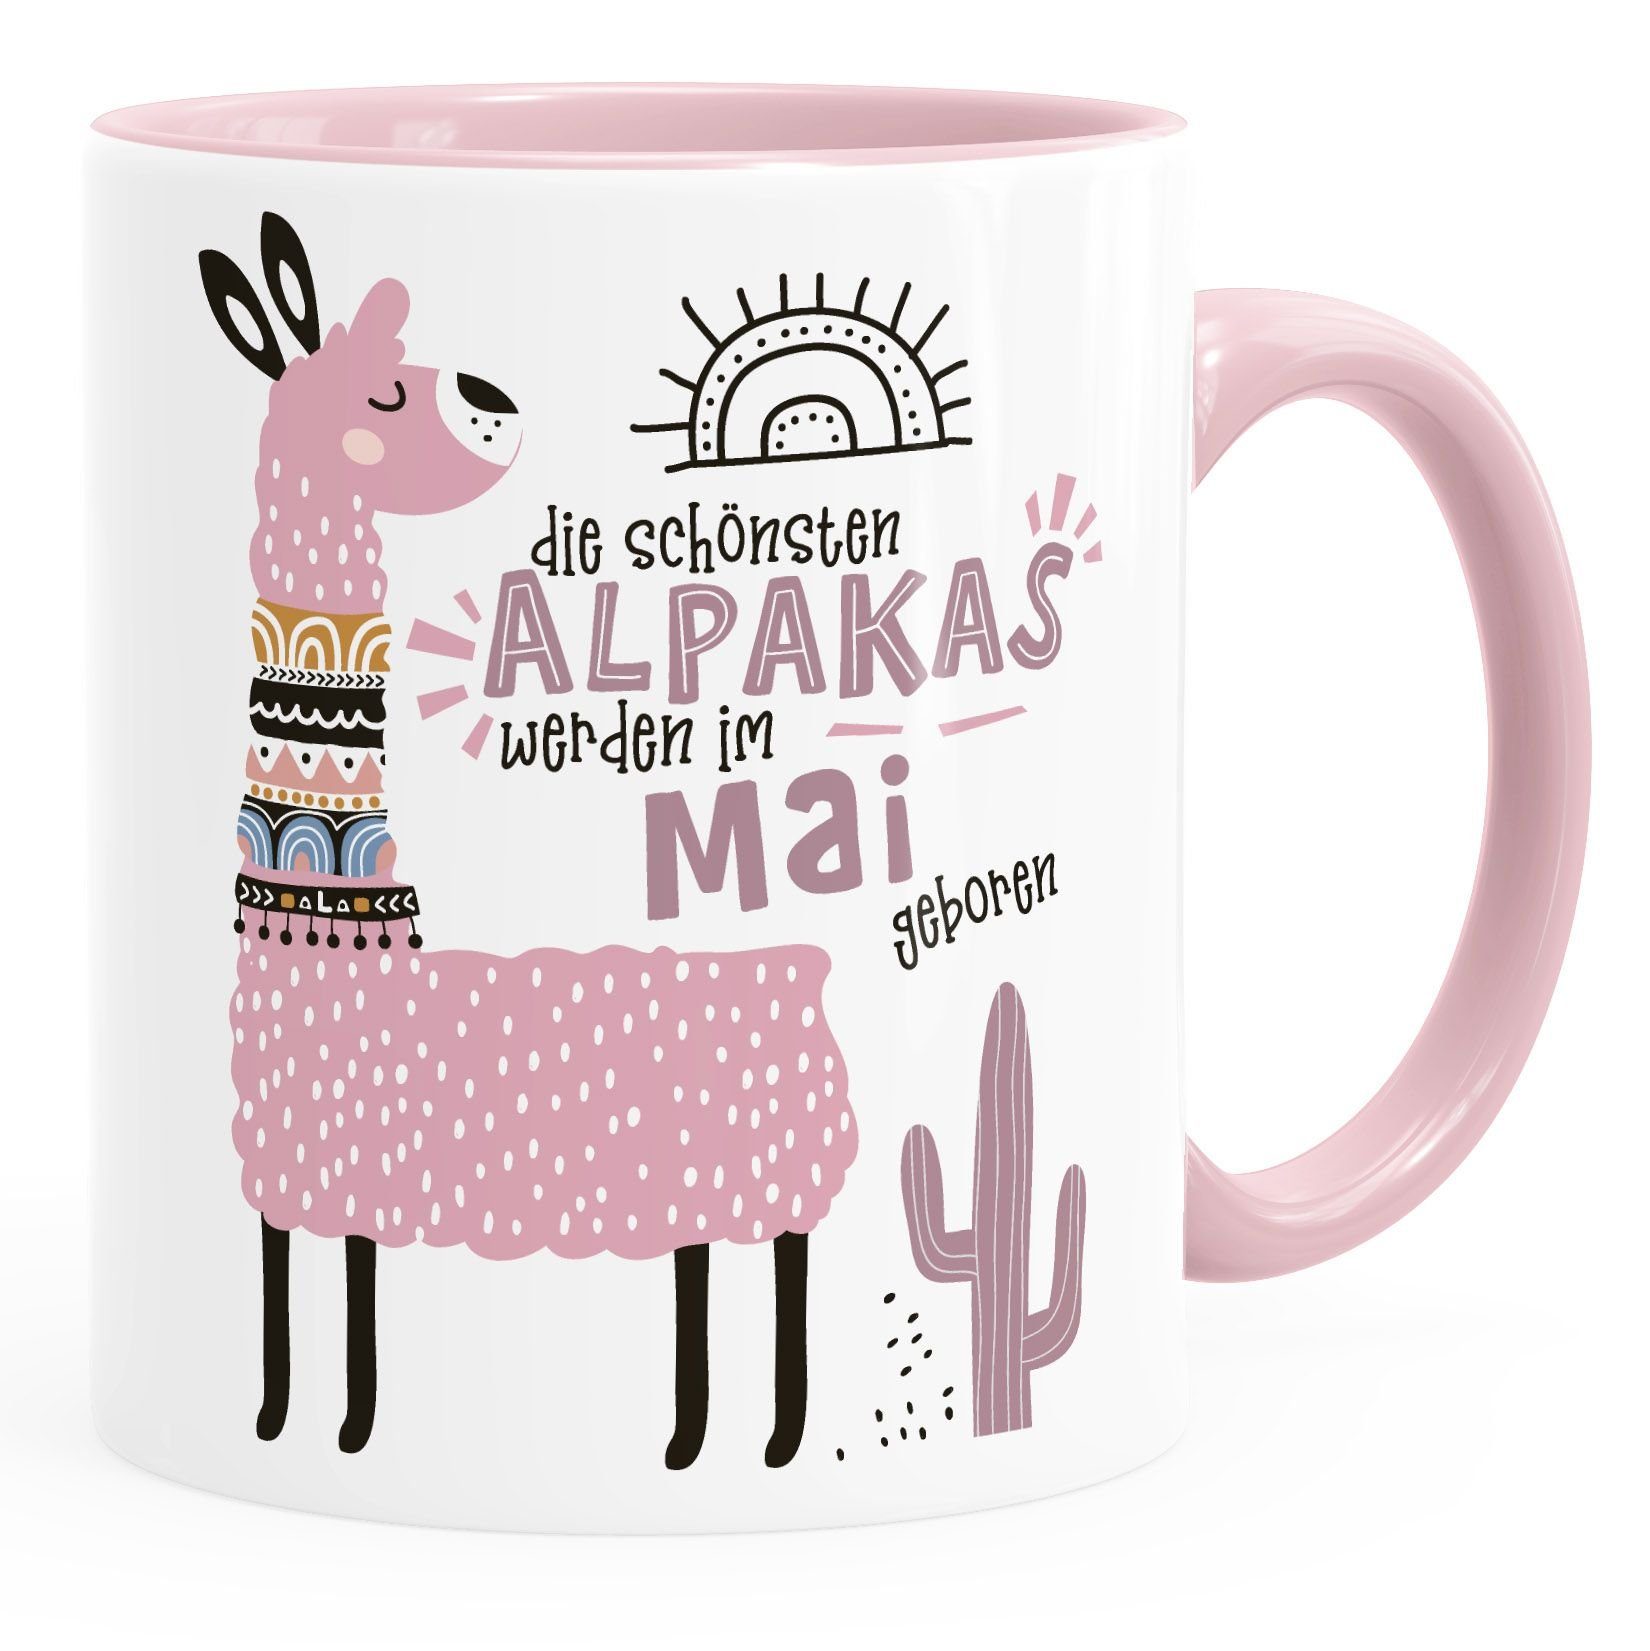 SpecialMe Tasse Kaffee-Tasse Die Schönsten Alpakas werden im Januar-Dezember geboren anpassbares Motiv Geburtsmonat individuelle Geburtags-Geschenke Lama SpecialMe®, Keramik Mai Rosa rosa